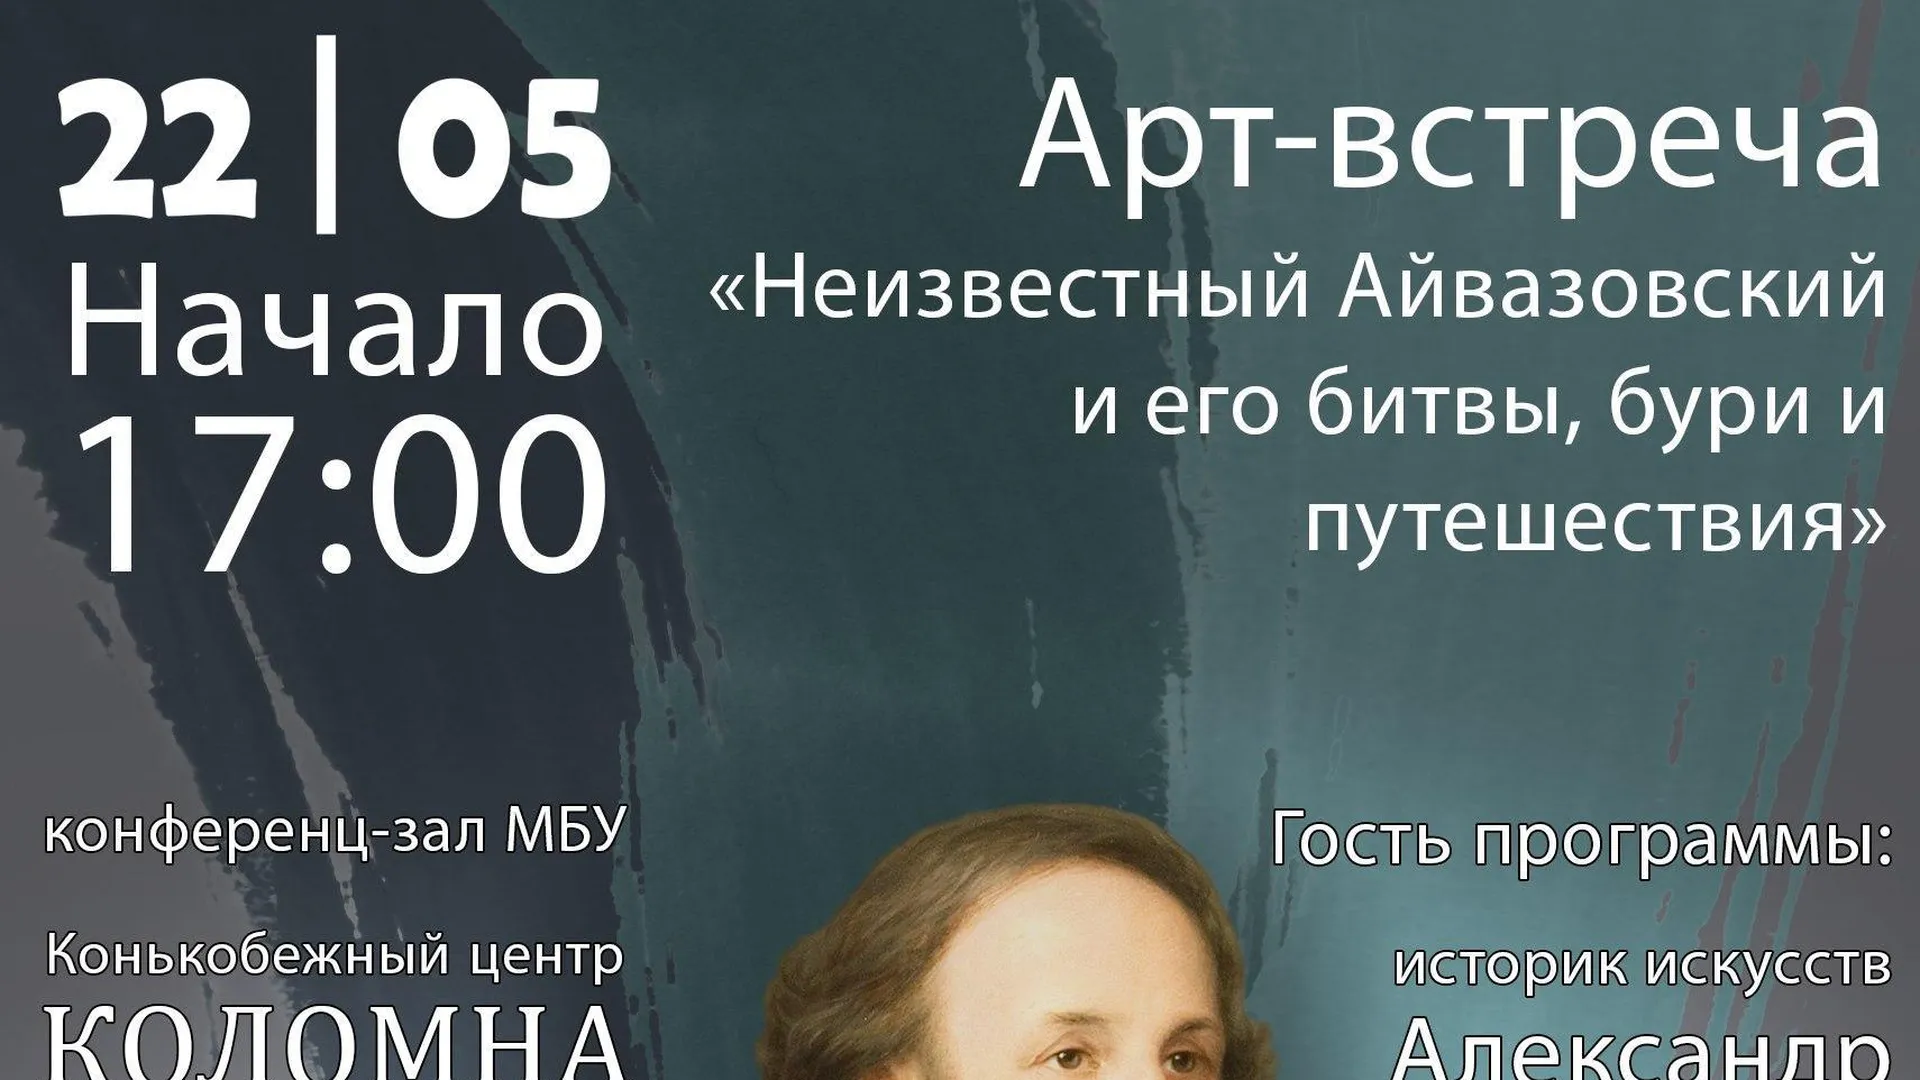 В Коломне 22 мая состоится арт-встреча, посвященная творчеству Айвазовского